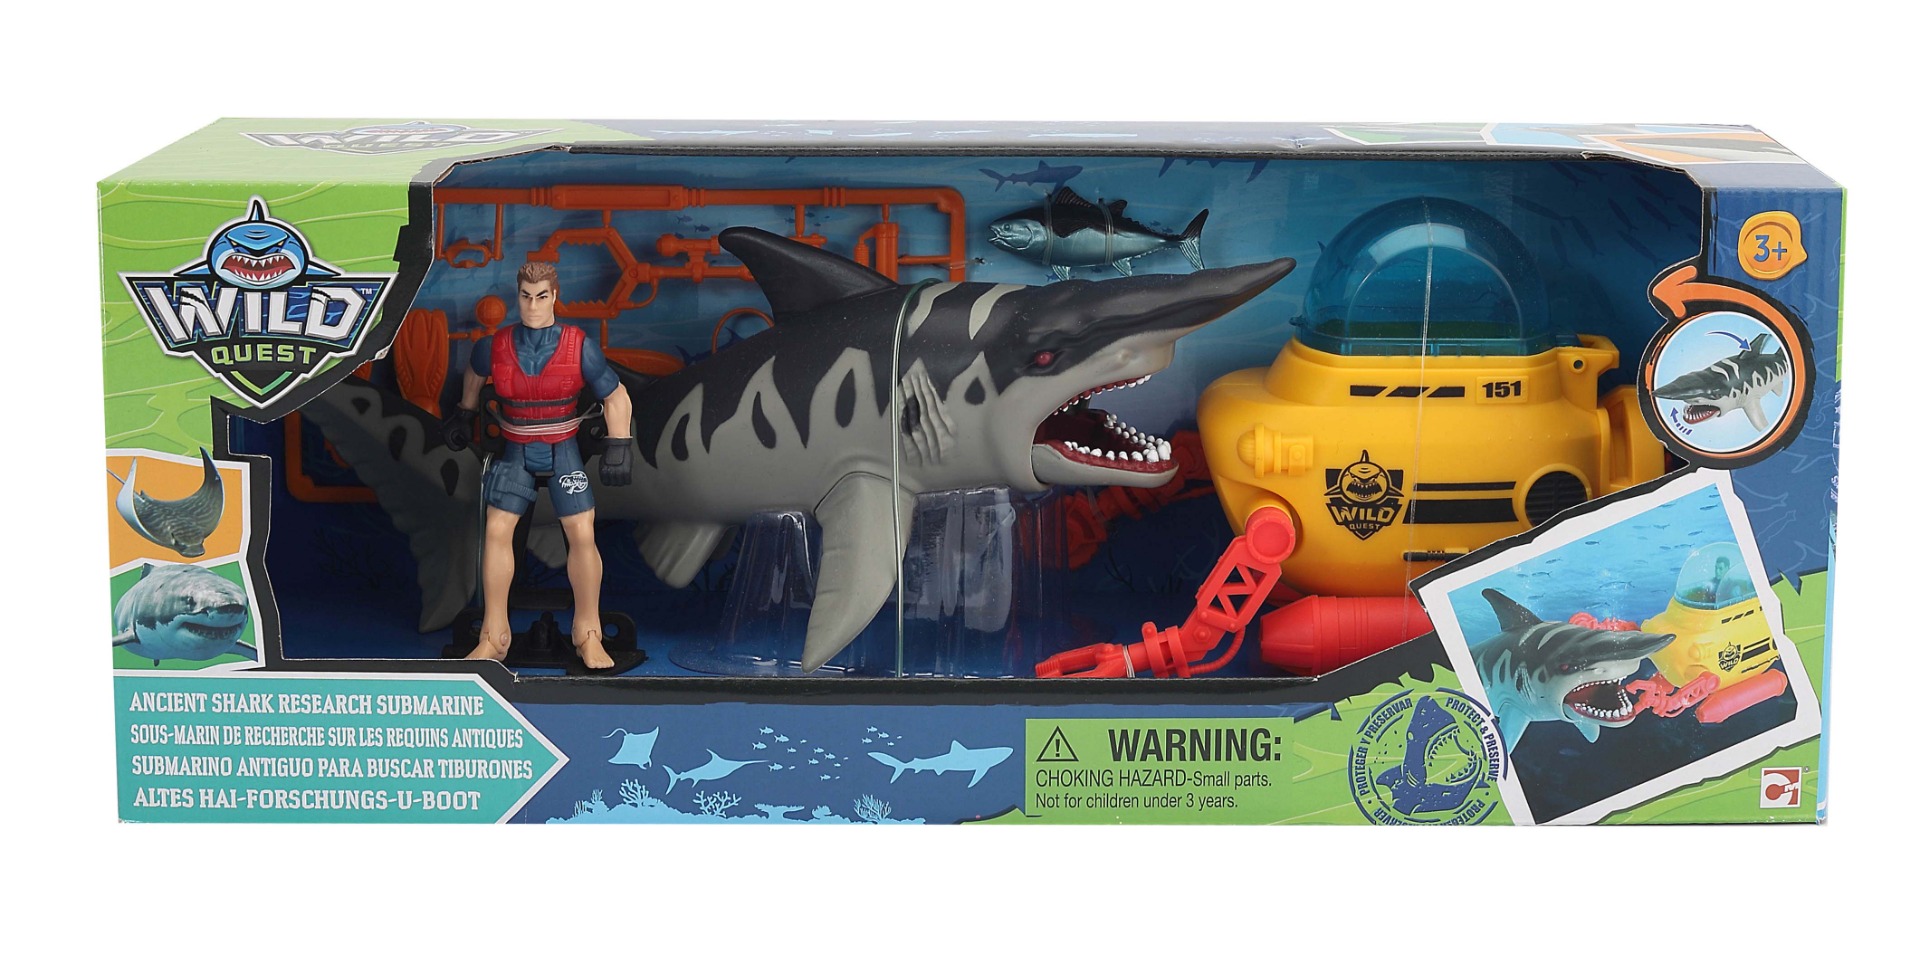 Set de joaca, Wild Quest, cu submarin si rechin preistoric figurine imagine 2022 protejamcopilaria.ro